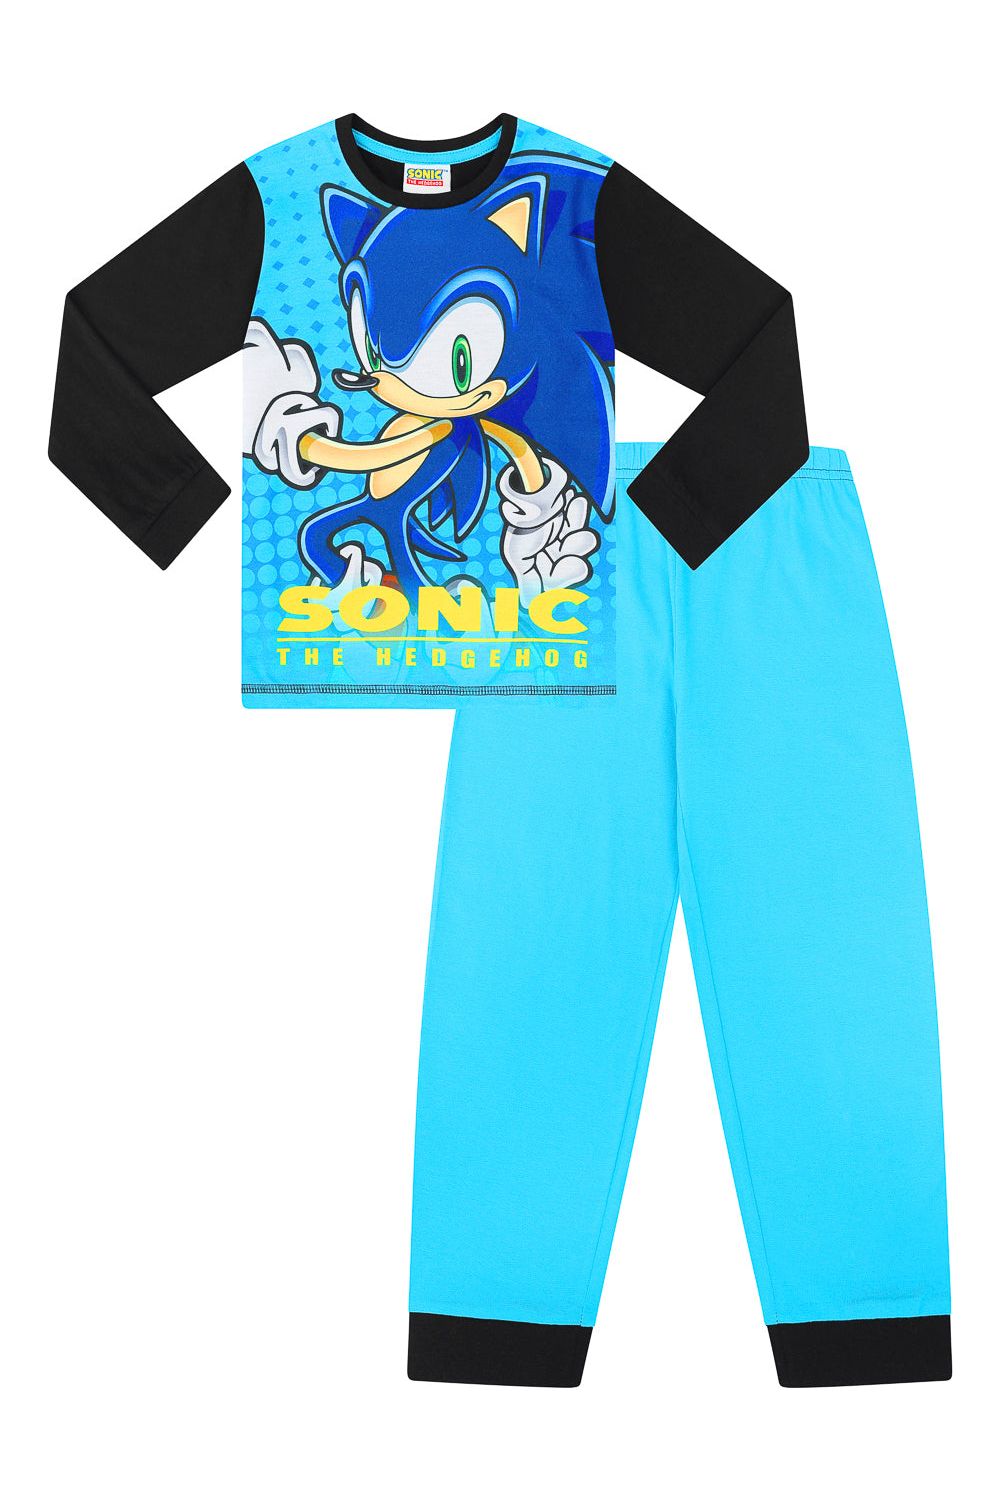 Boys Sonic The Hedgehog Long Gamer Cotton Pyjamas - Pyjamas.com